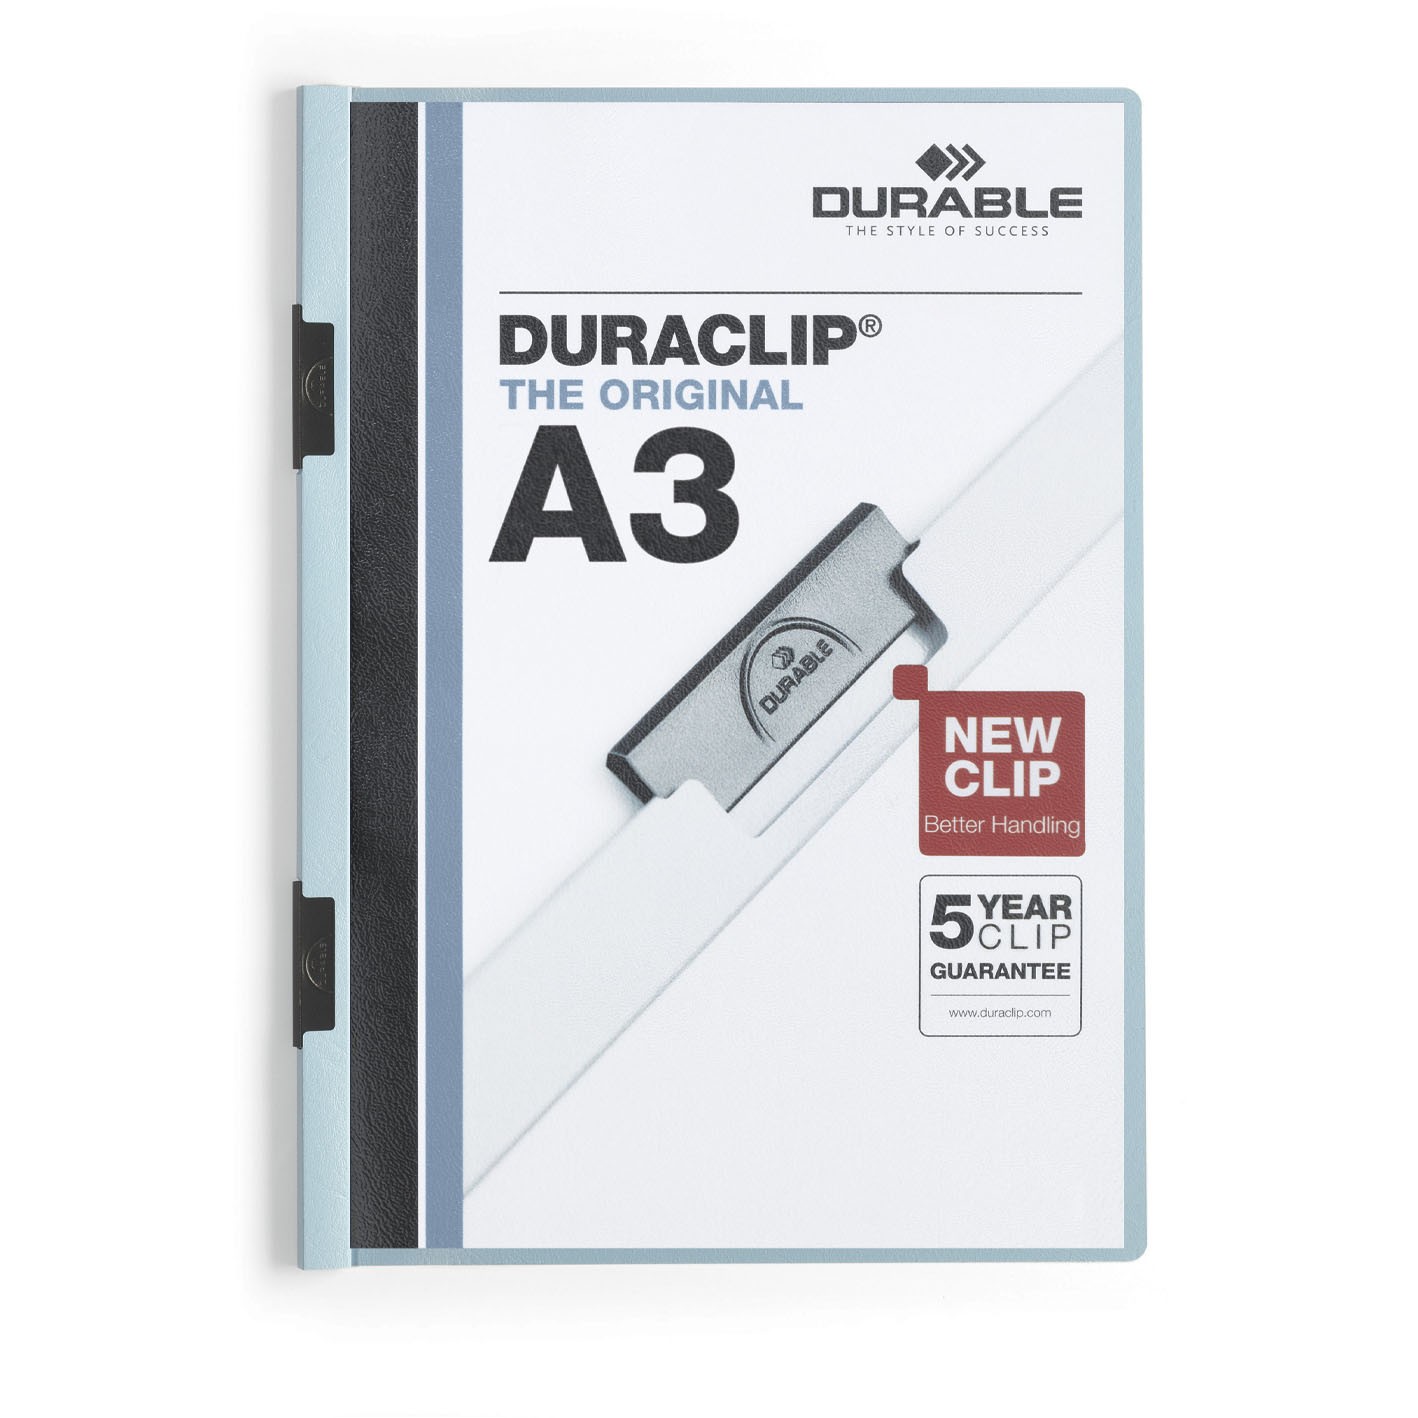 Durable Duraclip® A3 klemmappe lyseblå